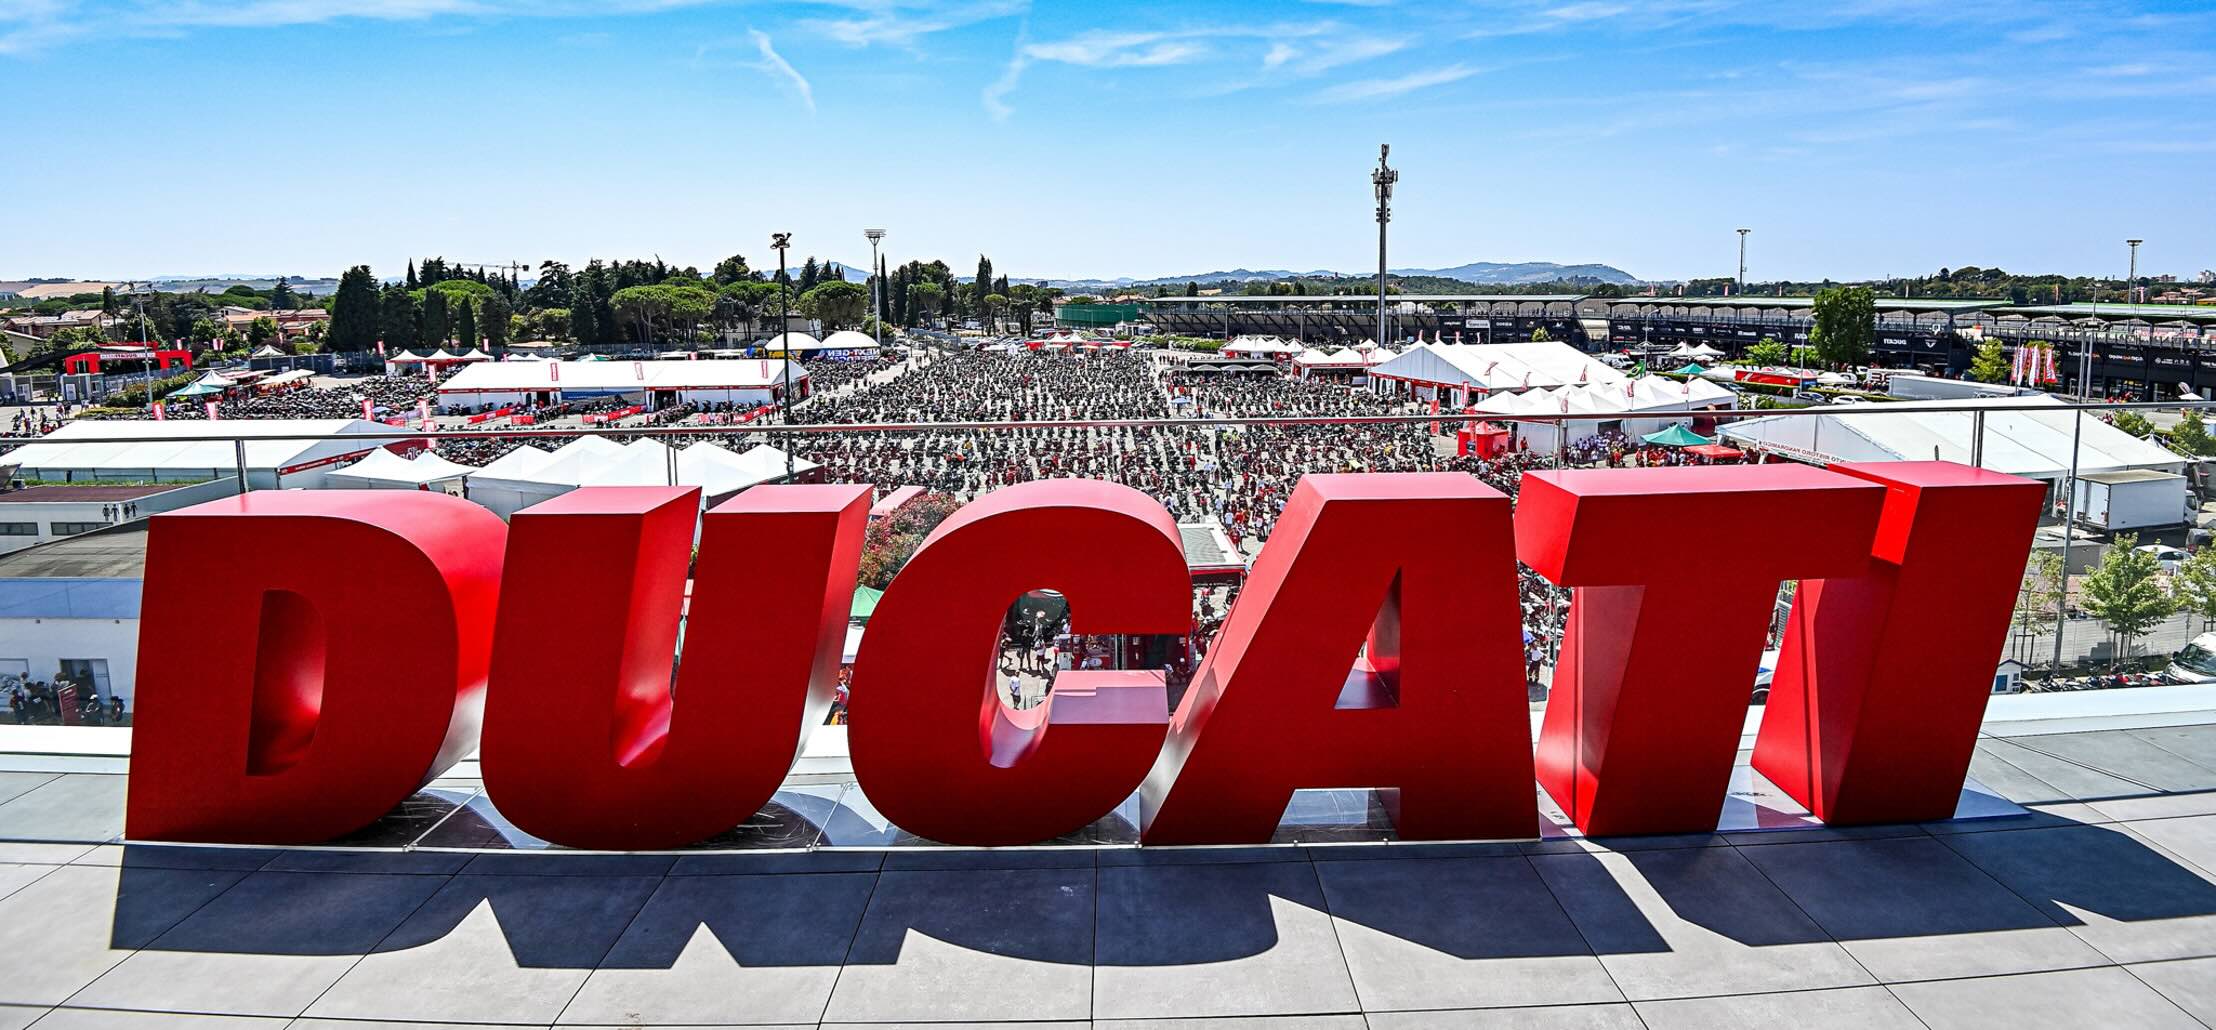 Ducati schakelt versnelling hoger met RCA Newsroom